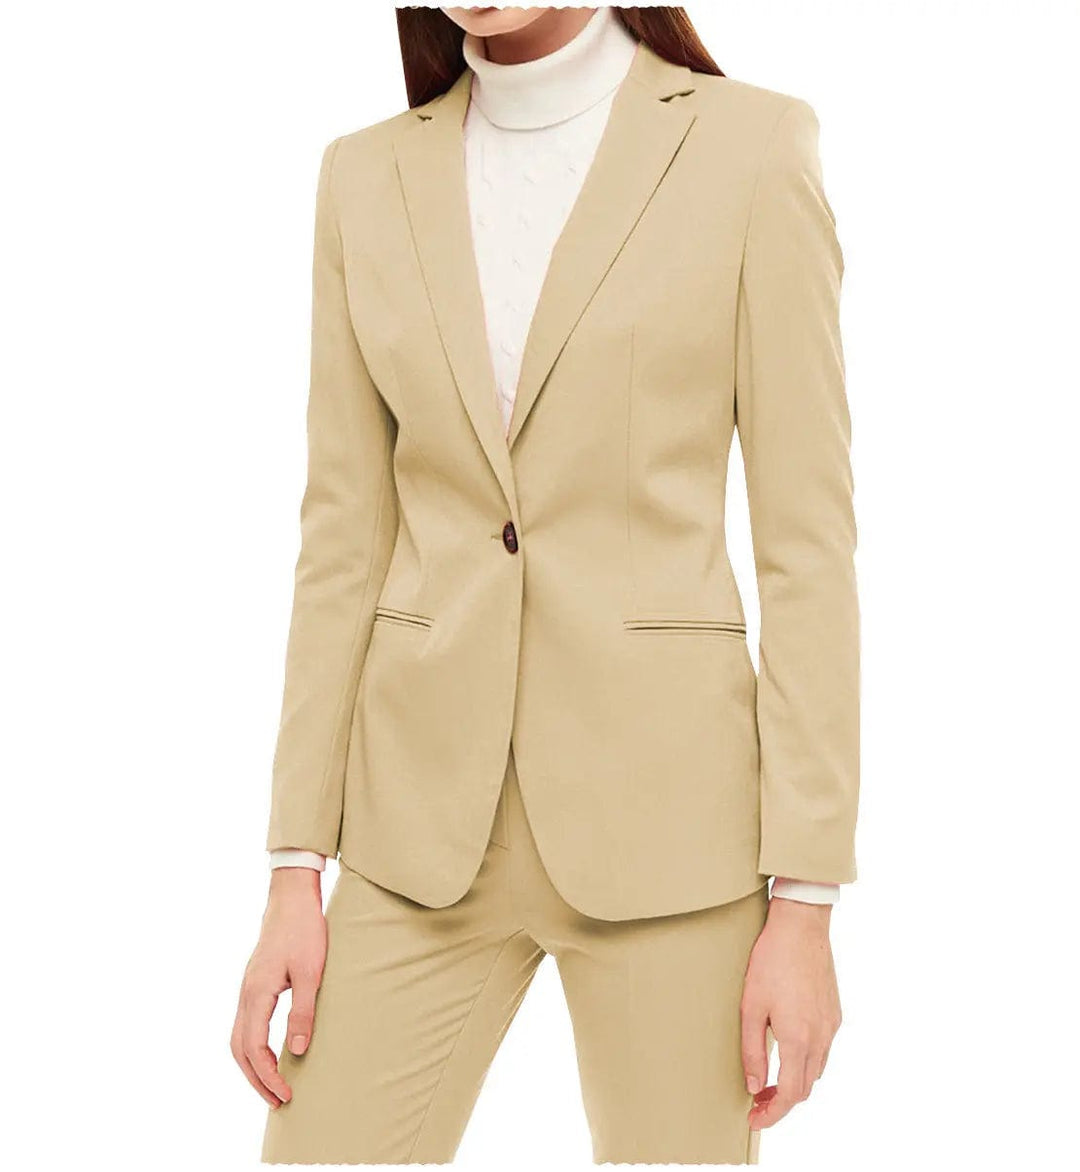 solovedress Business 2 Pieces Women Suit Notch Lapel Blazer